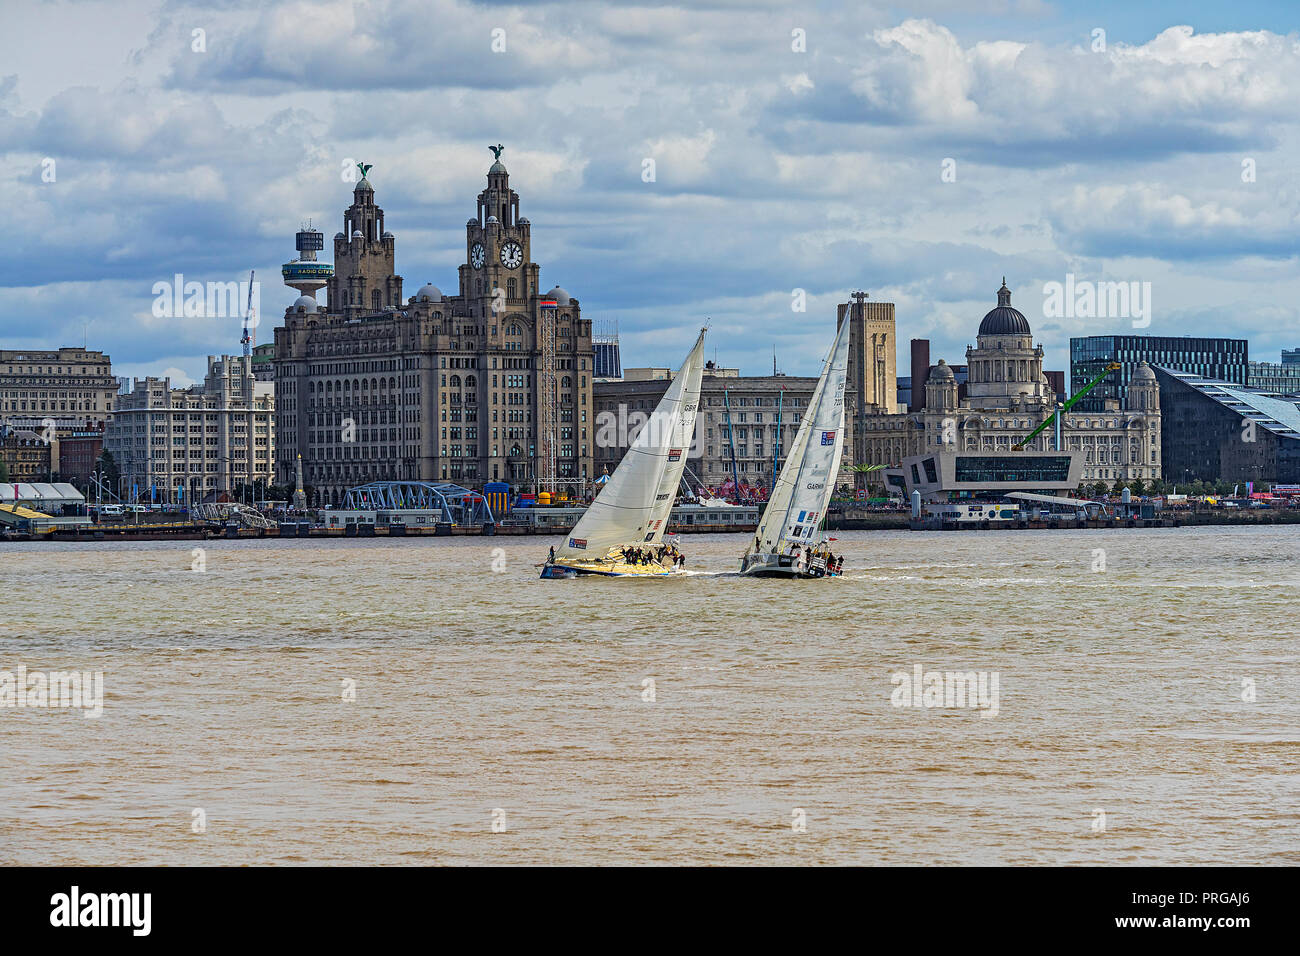 Clipper Round the World Race 2017-2018 montrant 2 yachts passant les Trois Grâces les bâtiments sur le front de mer de Liverpool le dimanche 20 août 2017 Banque D'Images